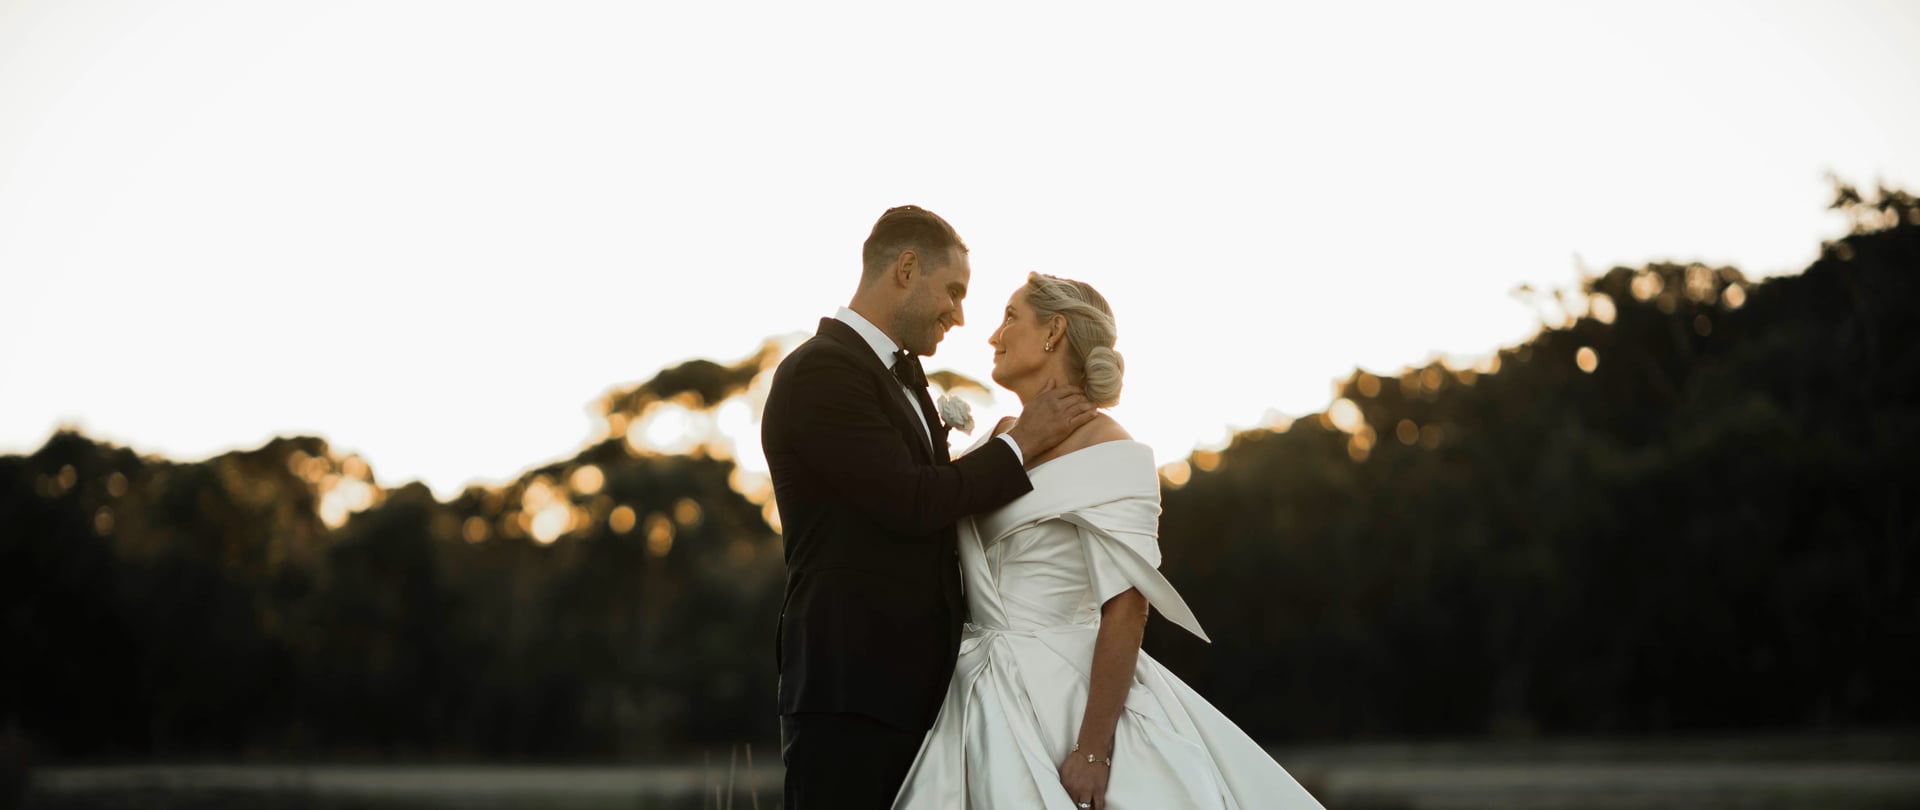 Chloe & Matt Wedding Video Filmed at Mornington Peninsula, Victoria